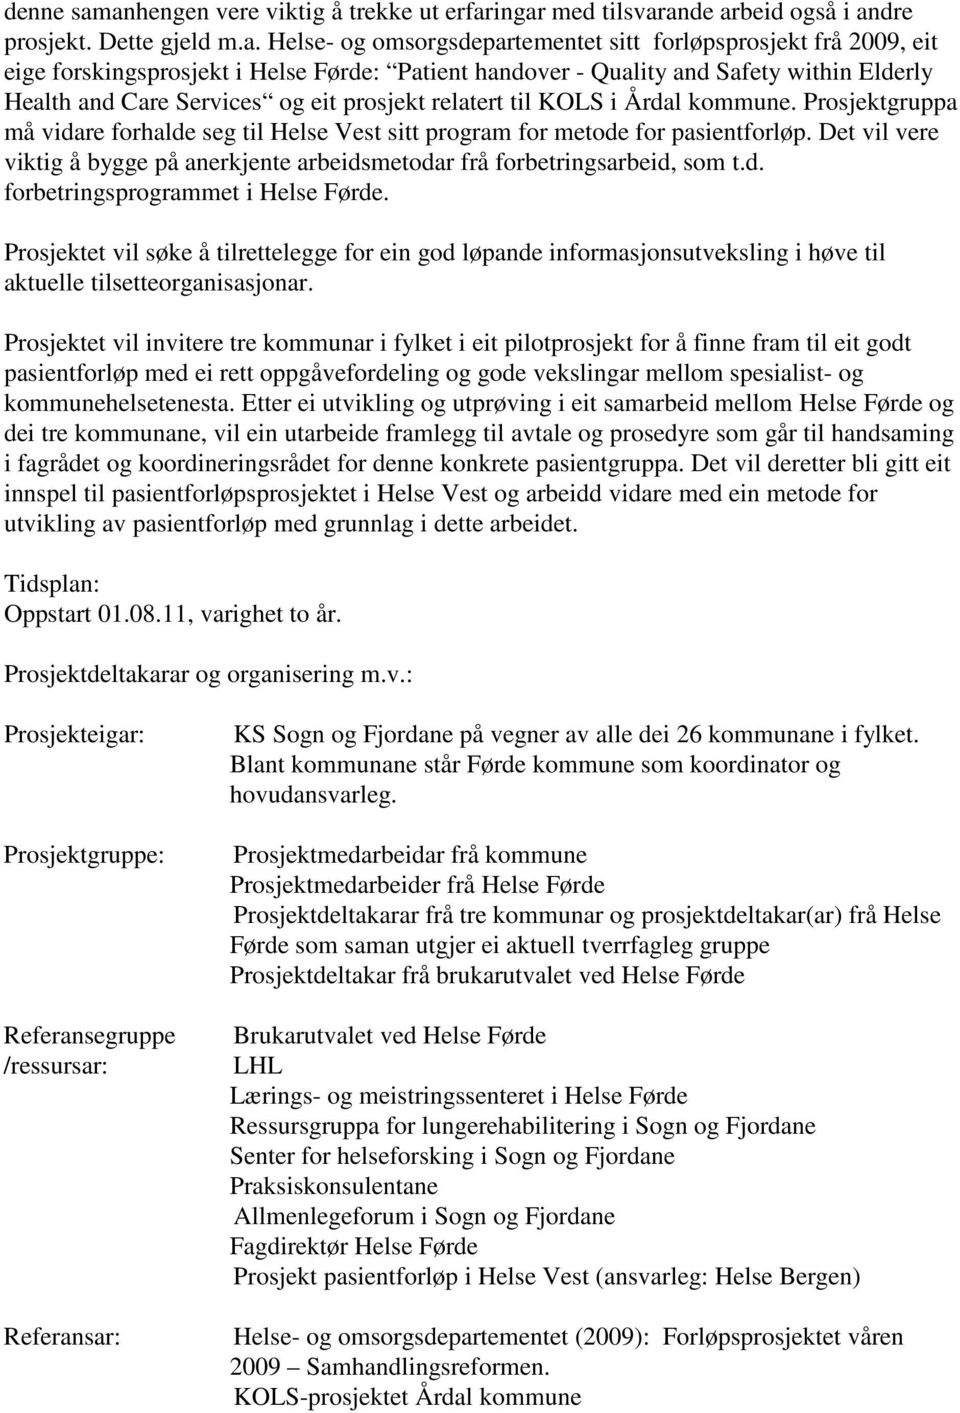 Helse Førde: Patient handover - Quality and Safety within Elderly Health and Care Services og eit prosjekt relatert til KOLS i Årdal kommune.